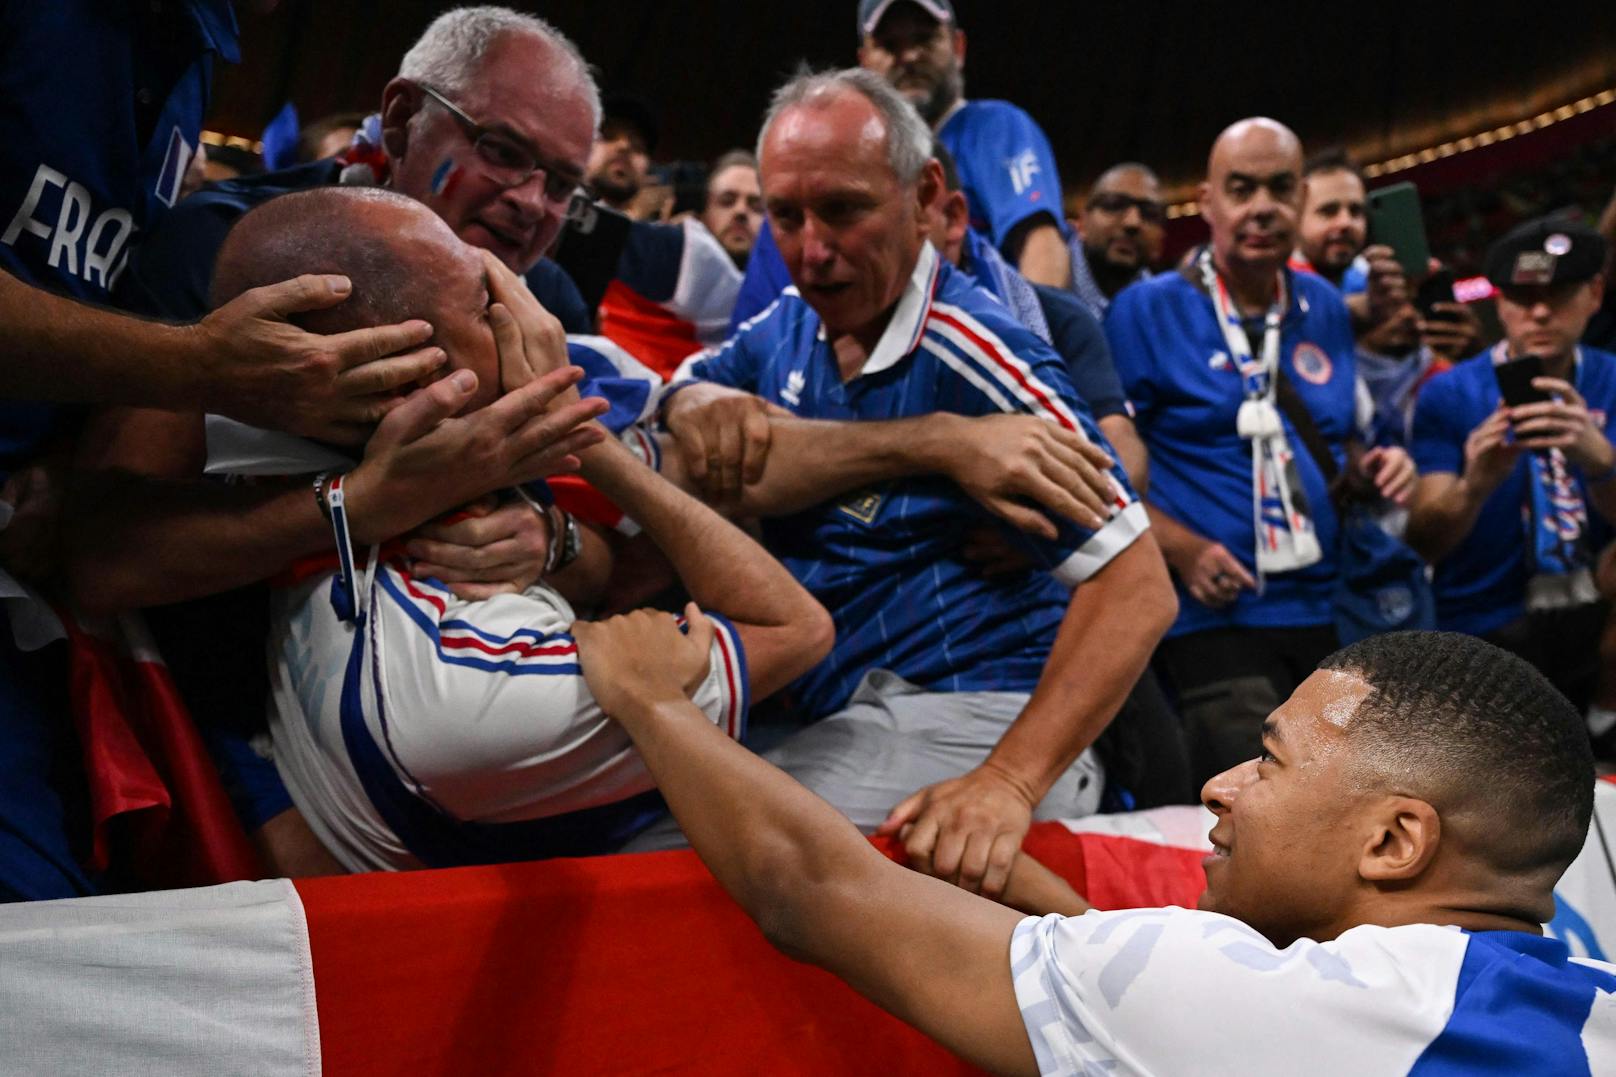 Frankreich-Star Kylian Mbappe trifft im Aufwärmen vor dem Halbfinale einen Fan, entschuldigt sich.